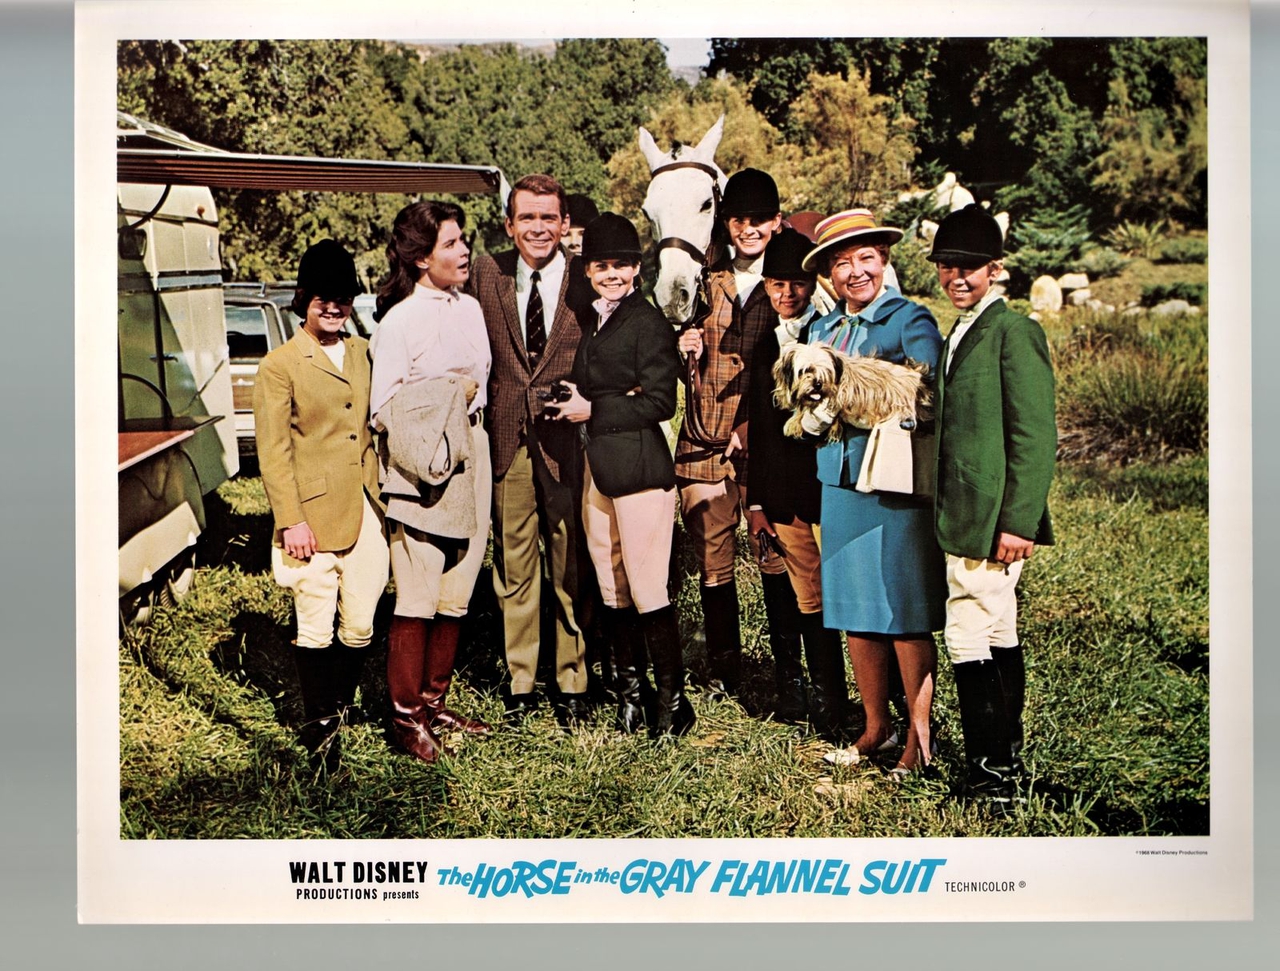  فیلم سینمایی The Horse in the Gray Flannel Suit با حضور لورن تاتل، Dean Jones، Diane Baker و Ellen Janov